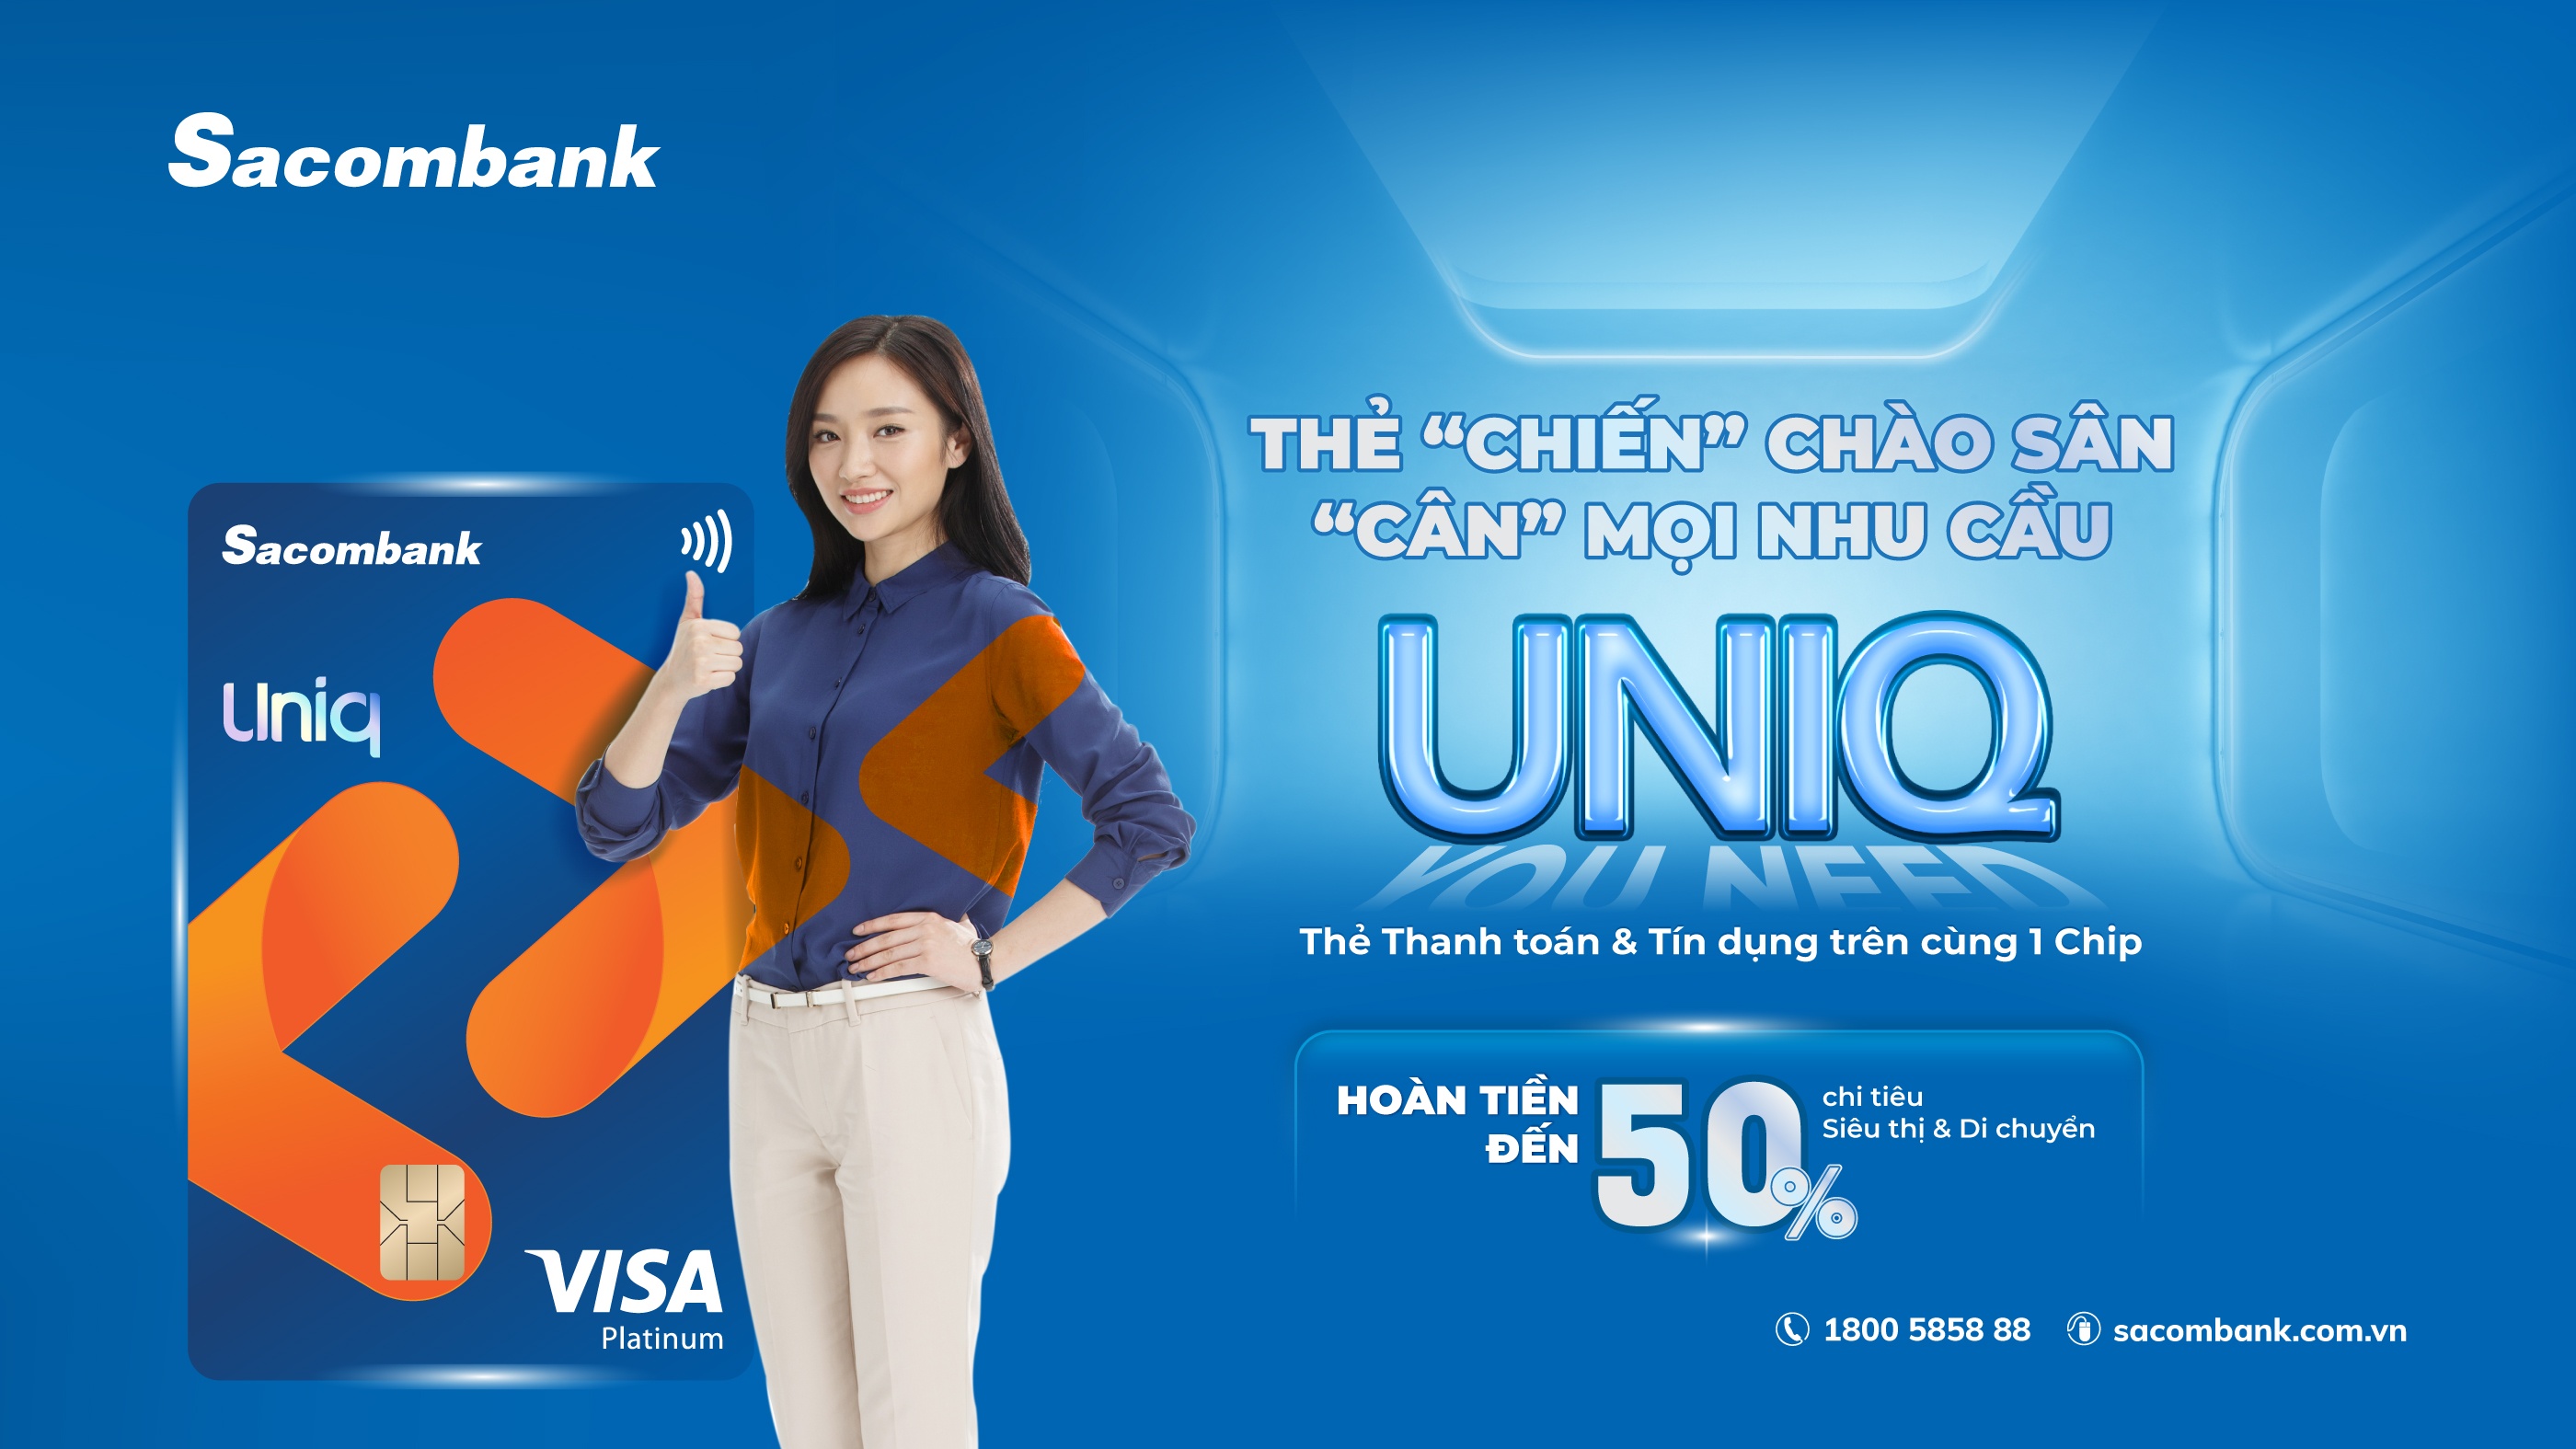 Sacombank kết hợp Tổ chức thẻ quốc tế Visa ra mắt thẻ tích hợp Sacombank Visa UNIQ Platinum